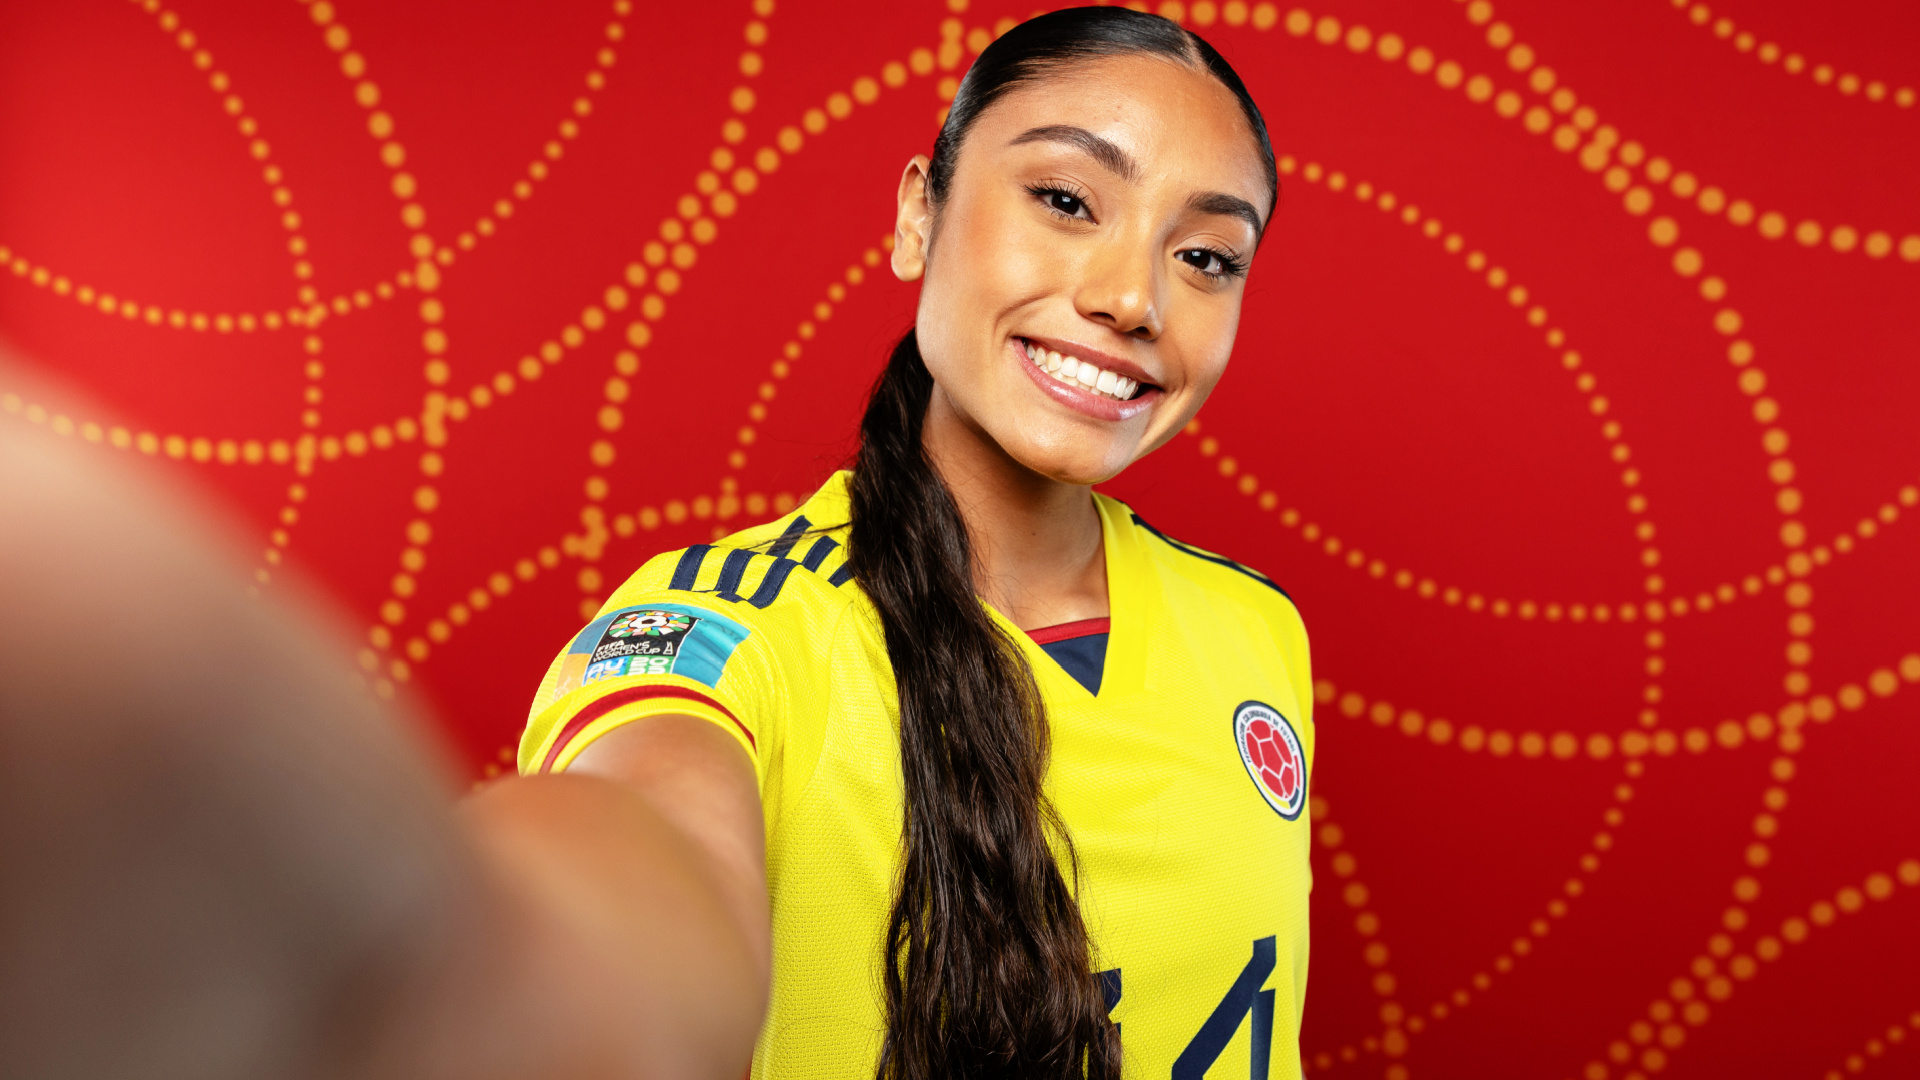 Ángela Barón: das kolumbianische Nachwuchstalent, das im Frauenfußball für Begeisterung sorgt